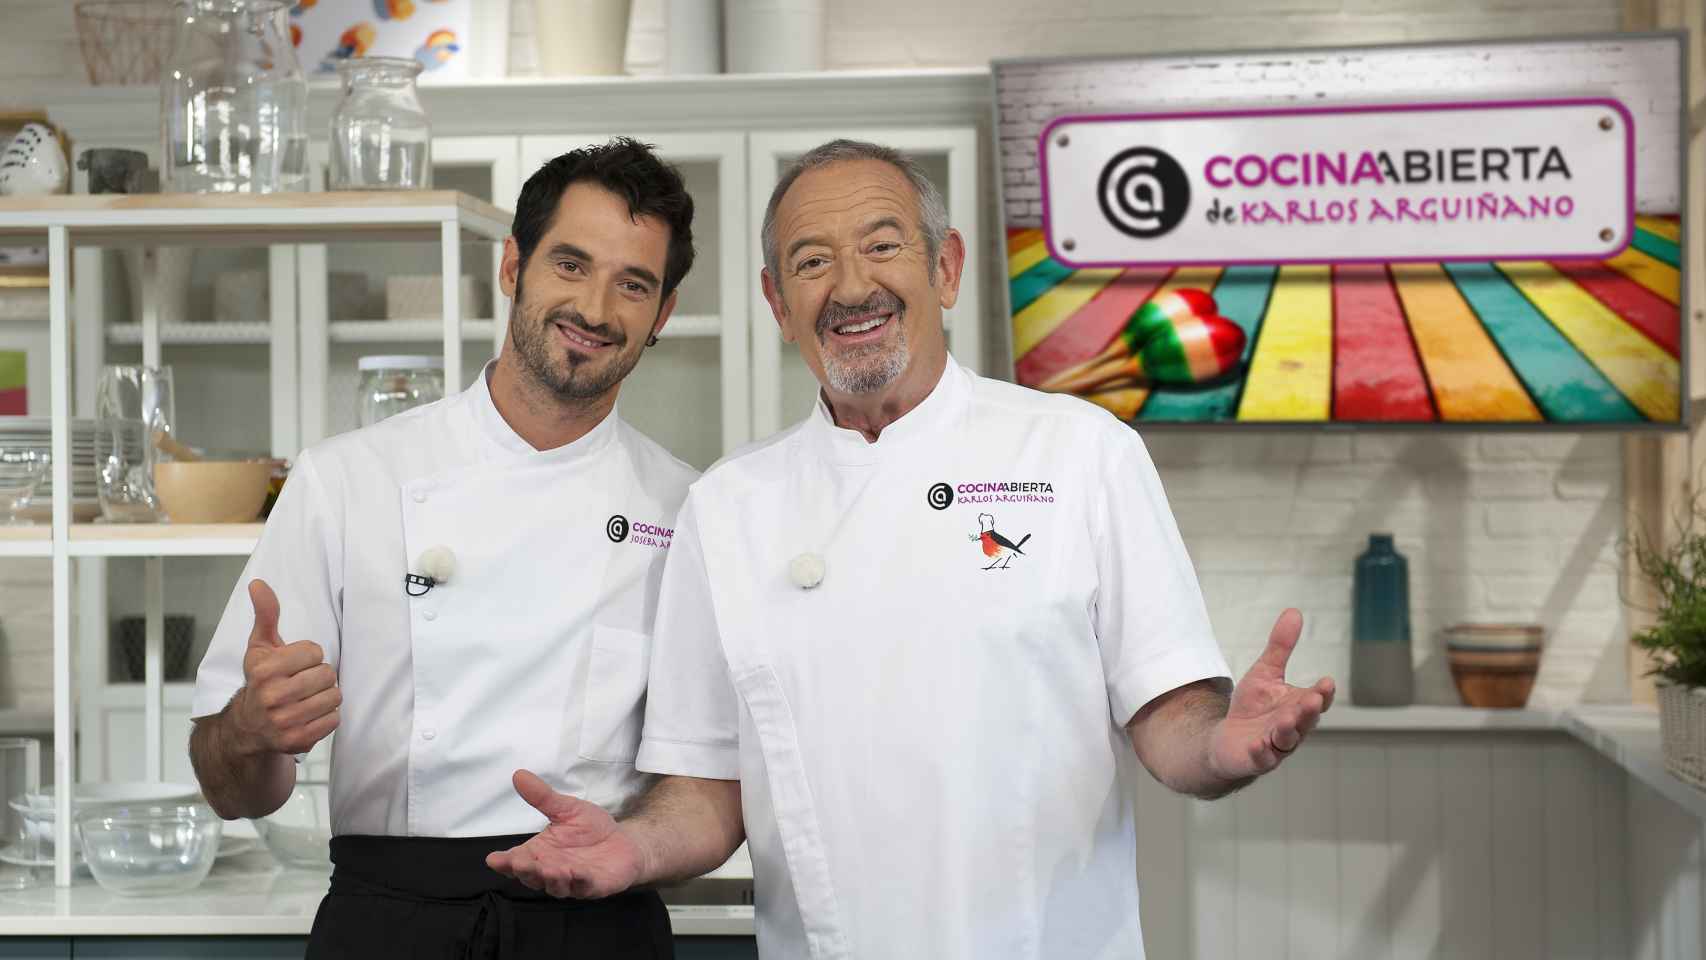 Joseba Arguiñano y su hijo, Joseba, colaborarán juntos en el programa 'Cocina abierta' de Antena 3